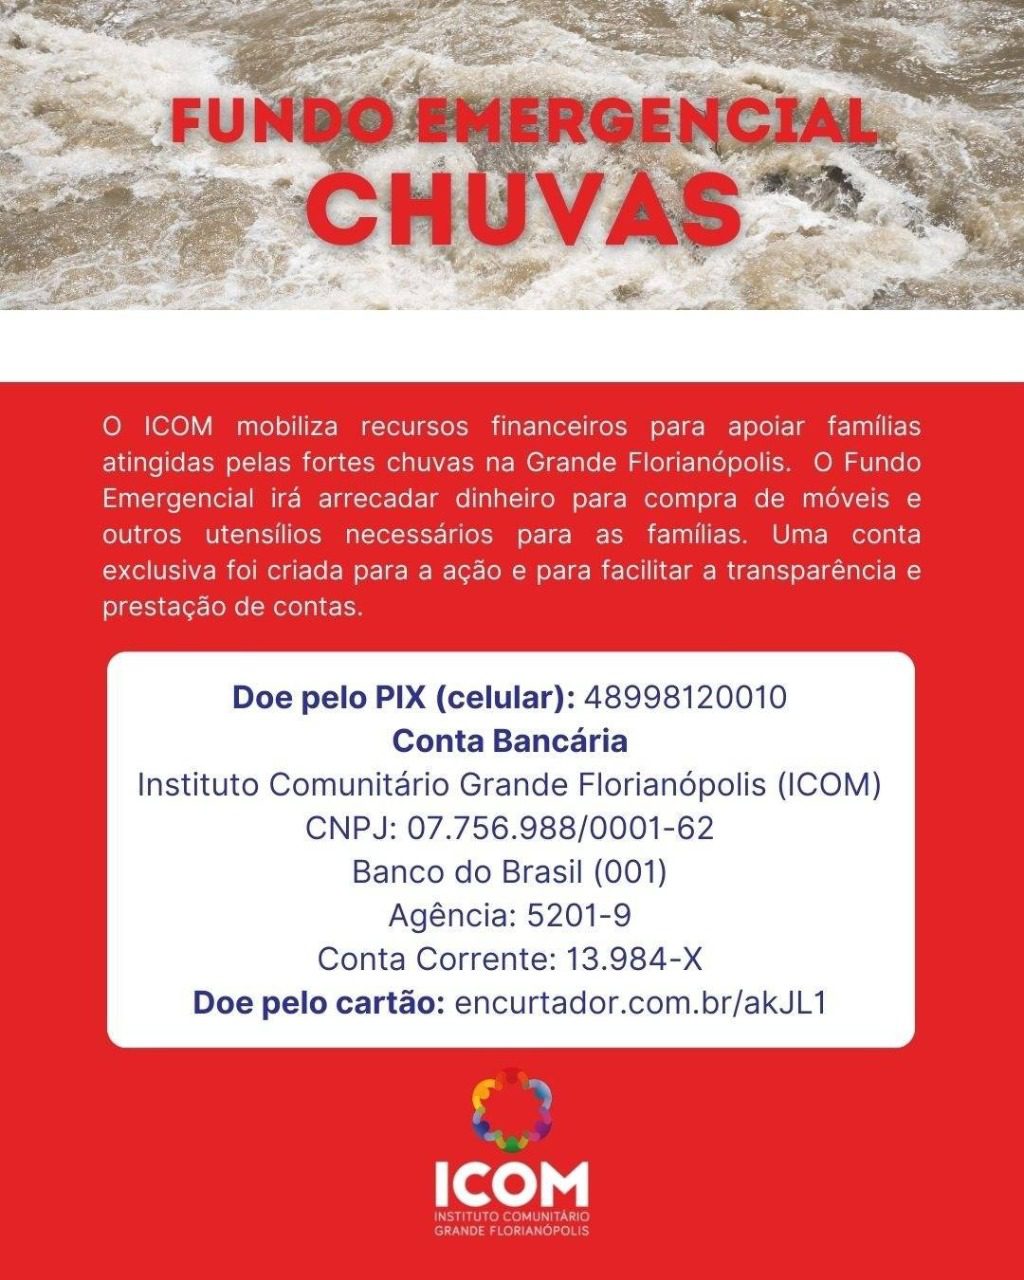  ICOM abre fundo emergencial para apoiar famílias atingidas pelas fortes chuvas na Grande Florianópolis